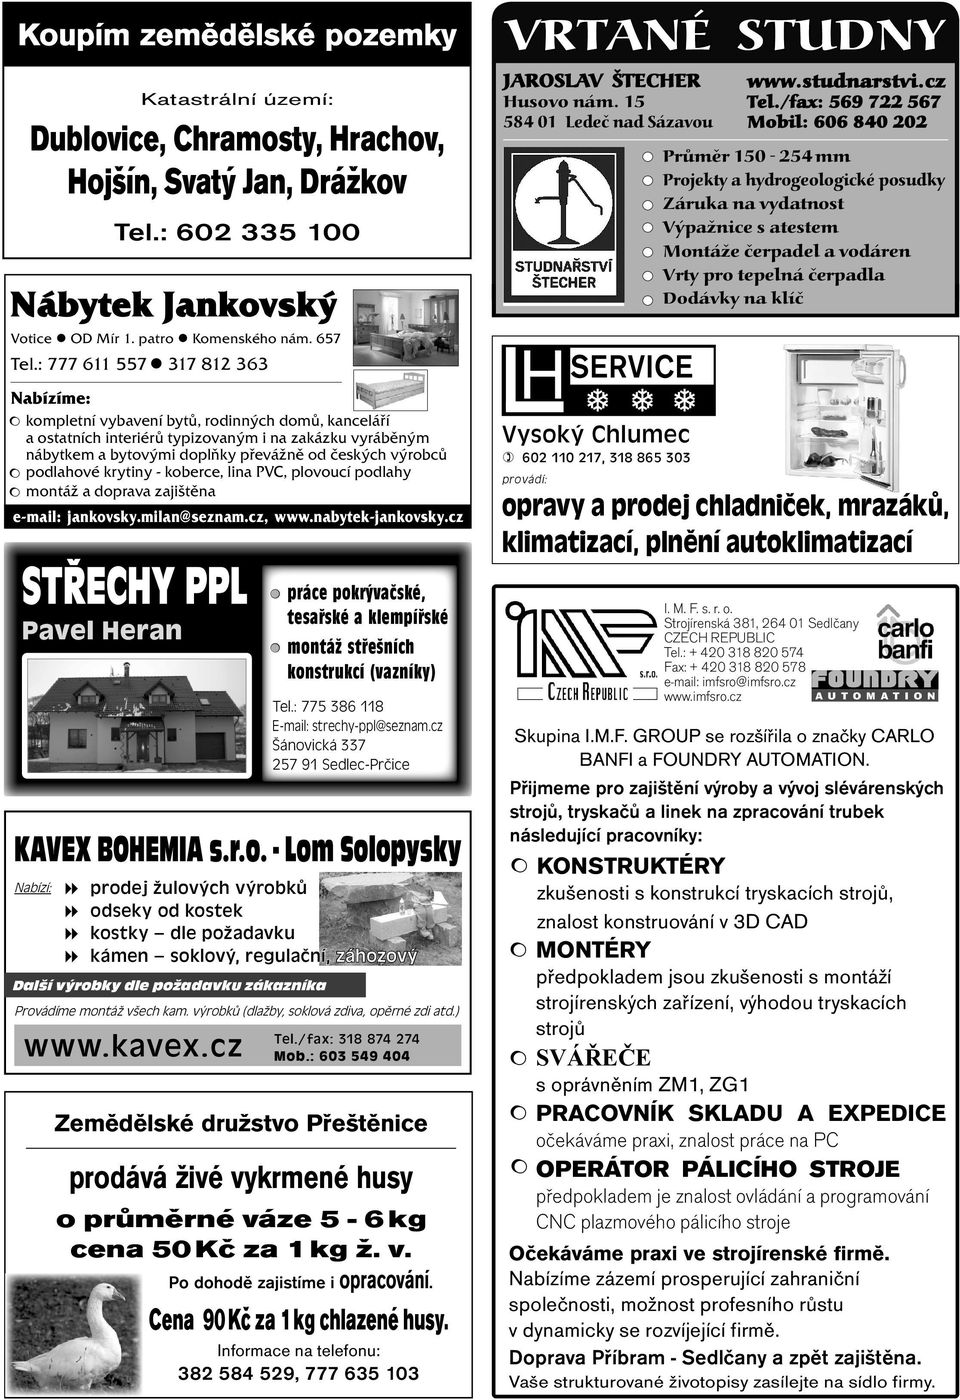 podlahové krytiny - koberce, lina PVC, plovoucí podlahy montáž a doprava zajištěna e-mail: jankovsky.milan@seznam.cz, www.nabytek-jankovsky.